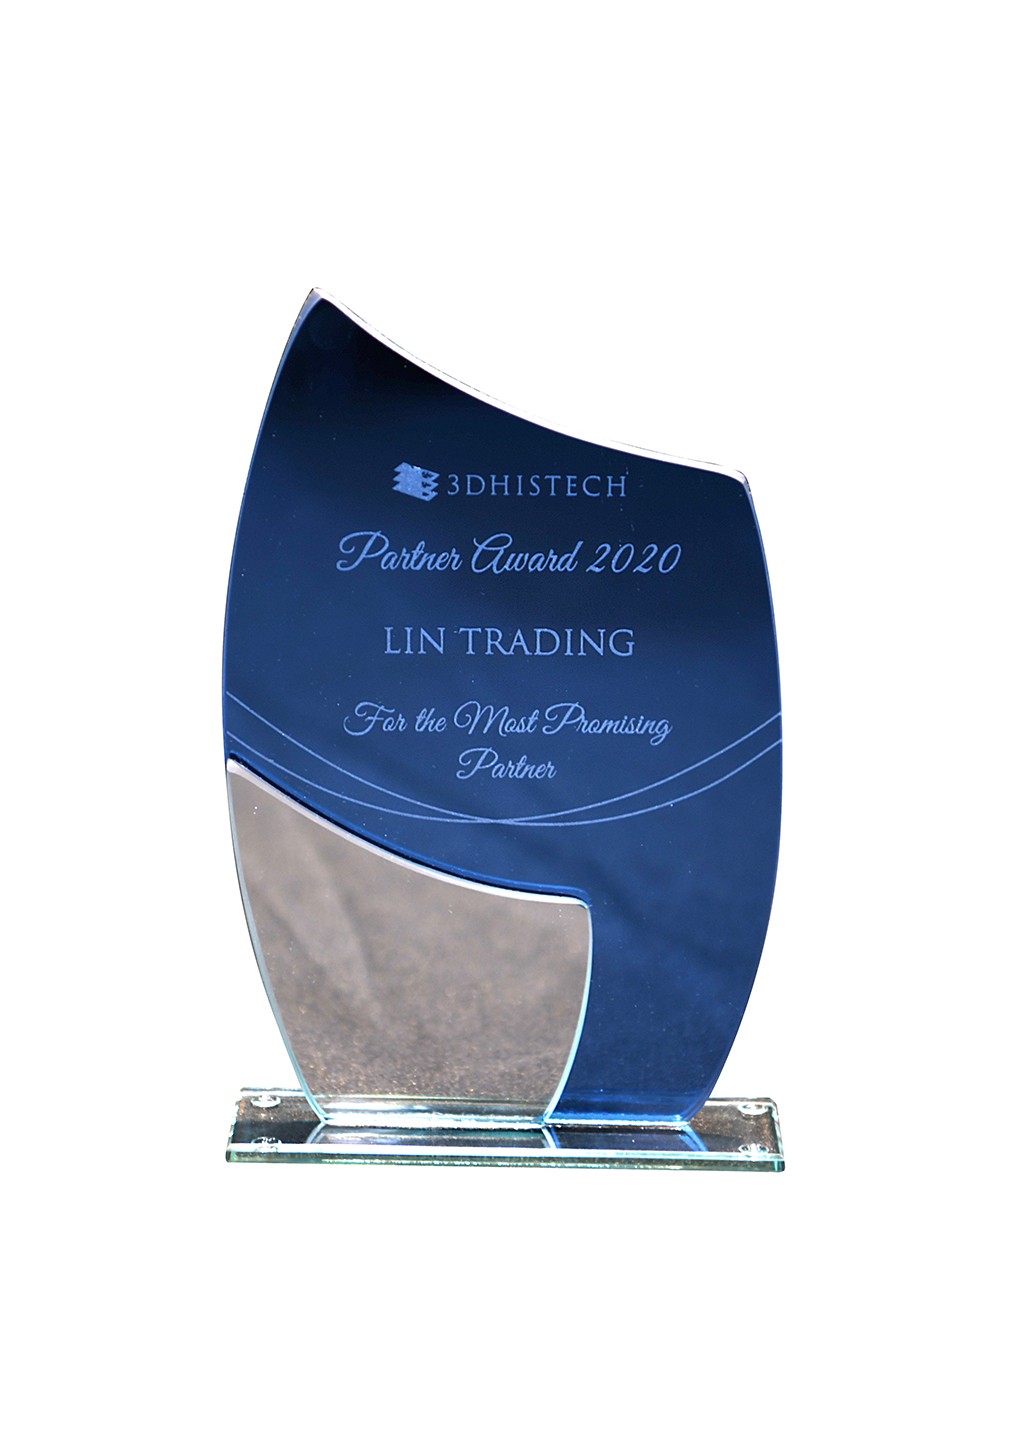 202002 國祥科儀 3dHistech.jpg - 生命科學儀器部 榮獲3DHISTECH頒發 最具銷售潛力獎